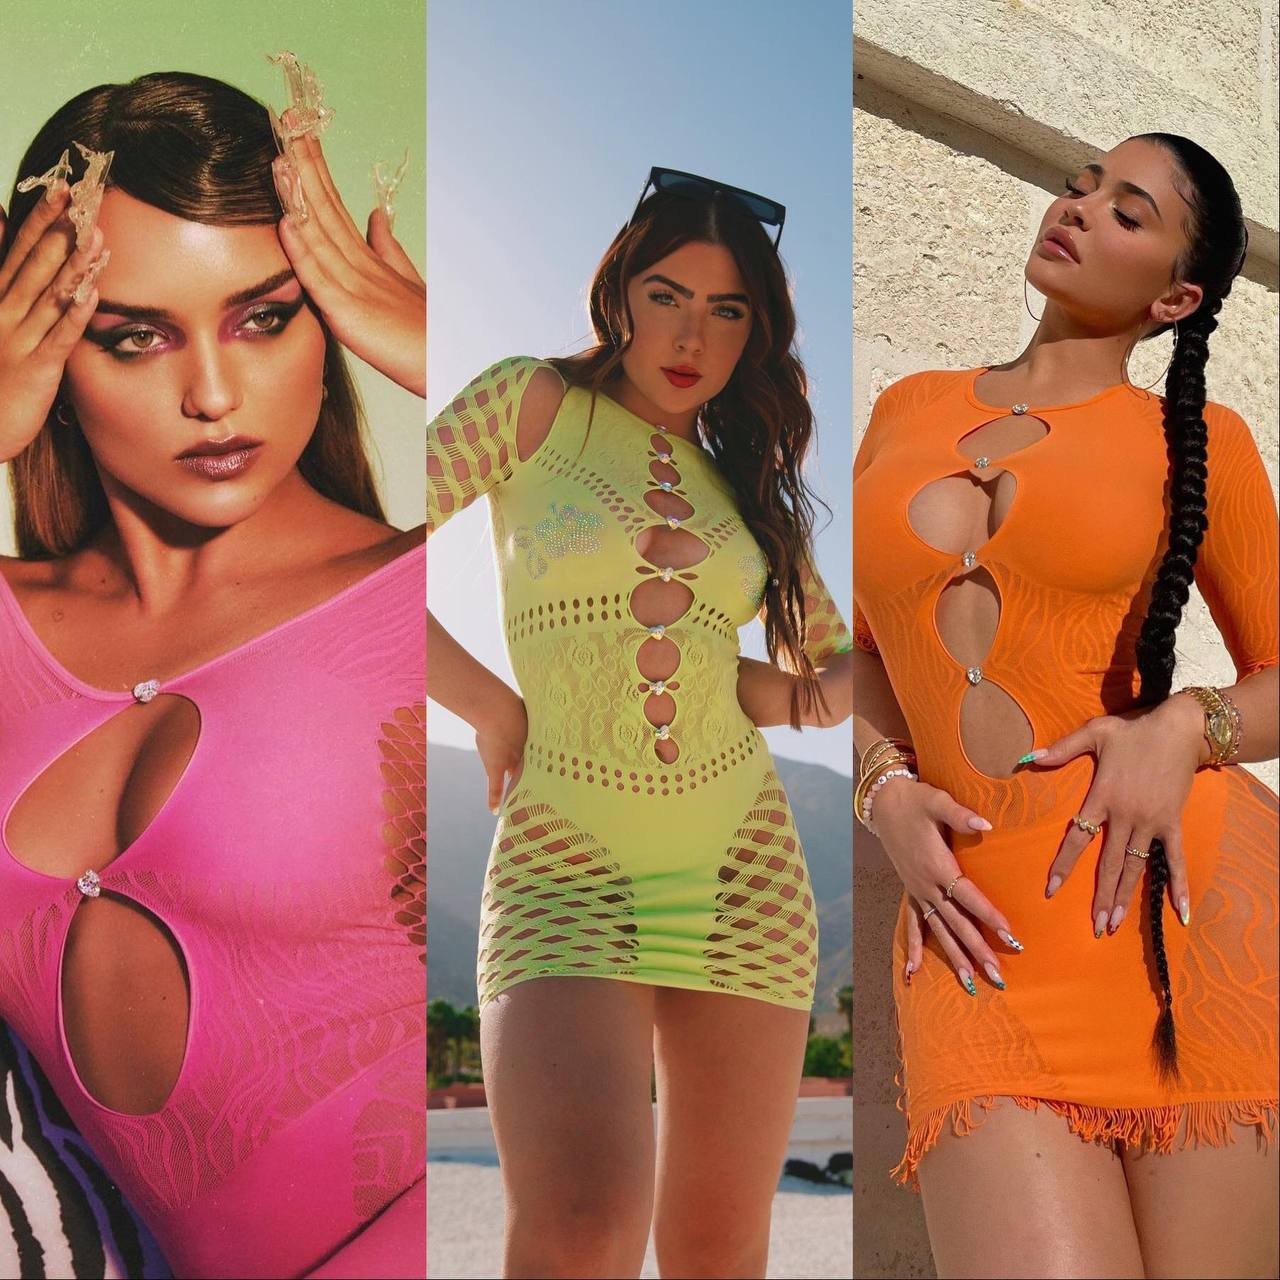 Rafa Kalimann, Jade Picon e Kylie Jenner já são adeptas da tendência (Foto: Reprodução / Instagram)